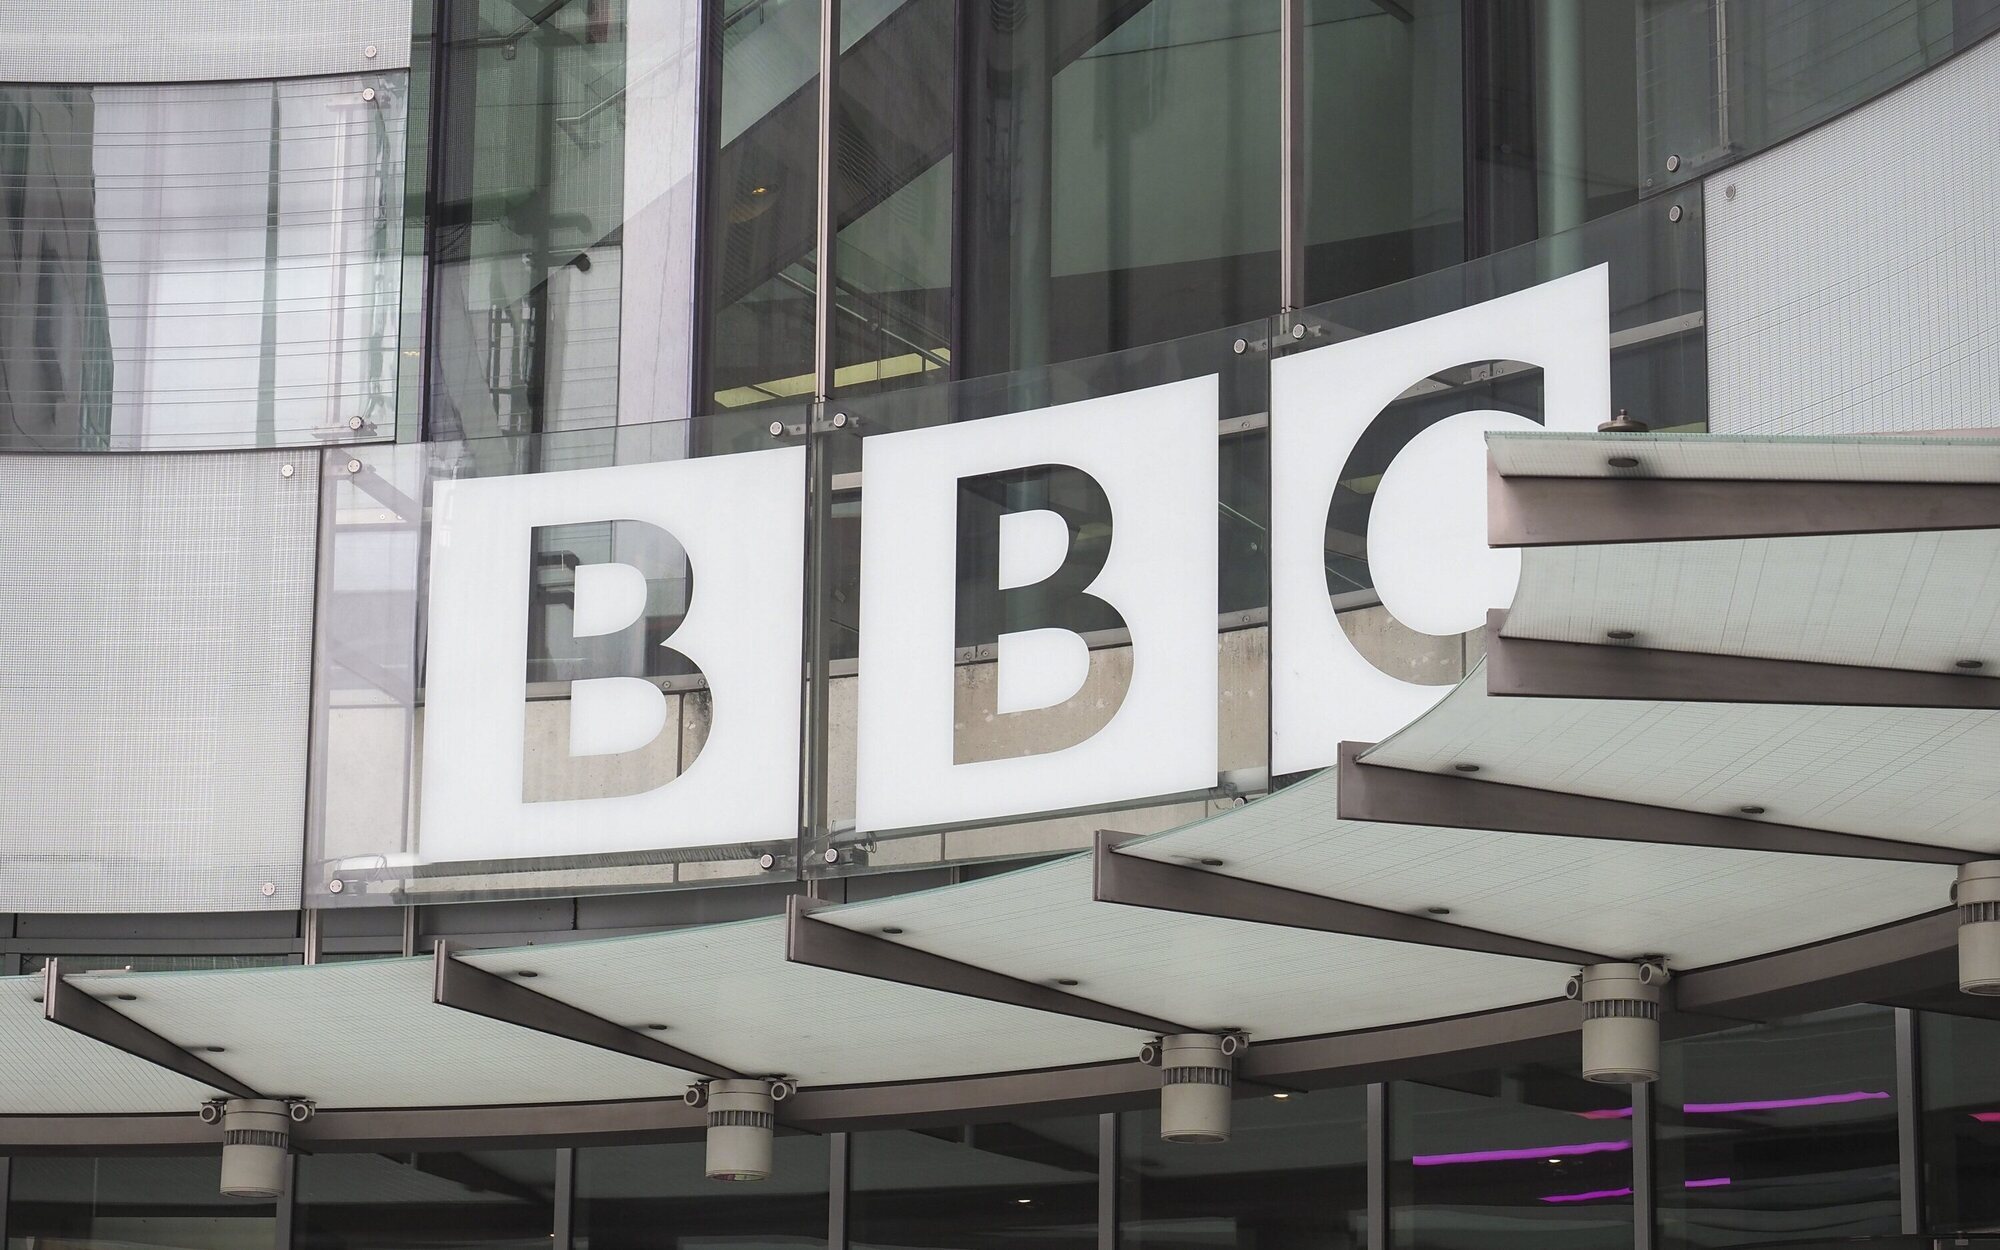 BBC, CNN y Bloomberg abandonan Rusia para evitar hasta 15 años de cárcel por publicar "información falsa"